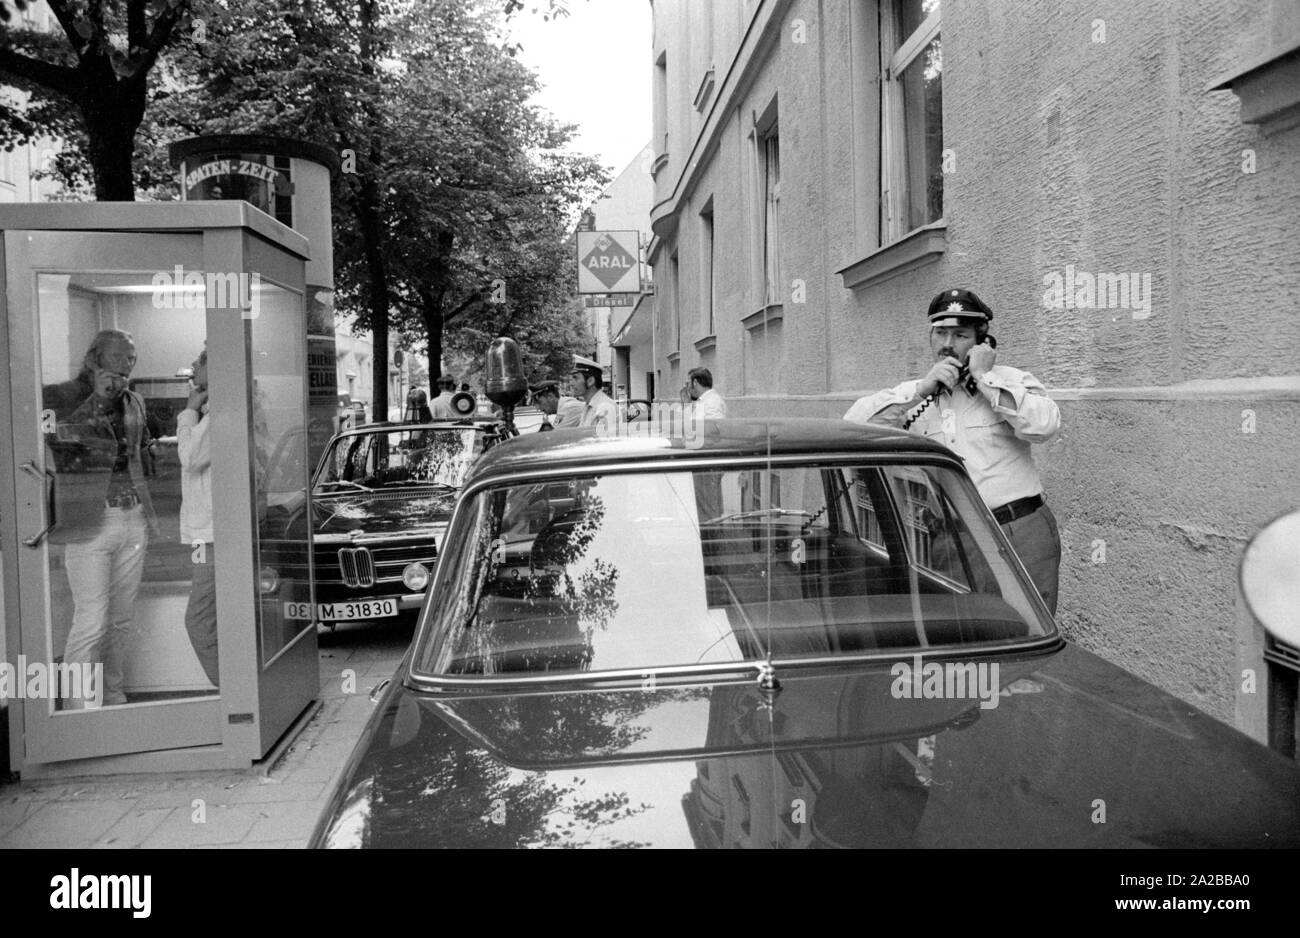 Le raid sur une branche de la Deutsche Bank sur la Prinzregentenstrasse sur 04.08.1971 devient une partie de l'histoire criminelle de l'Allemagne : c'est le premier vol de banque avec prise d'otage de la République fédérale. Sur la photo : voitures de police parc sur le trottoir dans une rue latérale. Banque D'Images